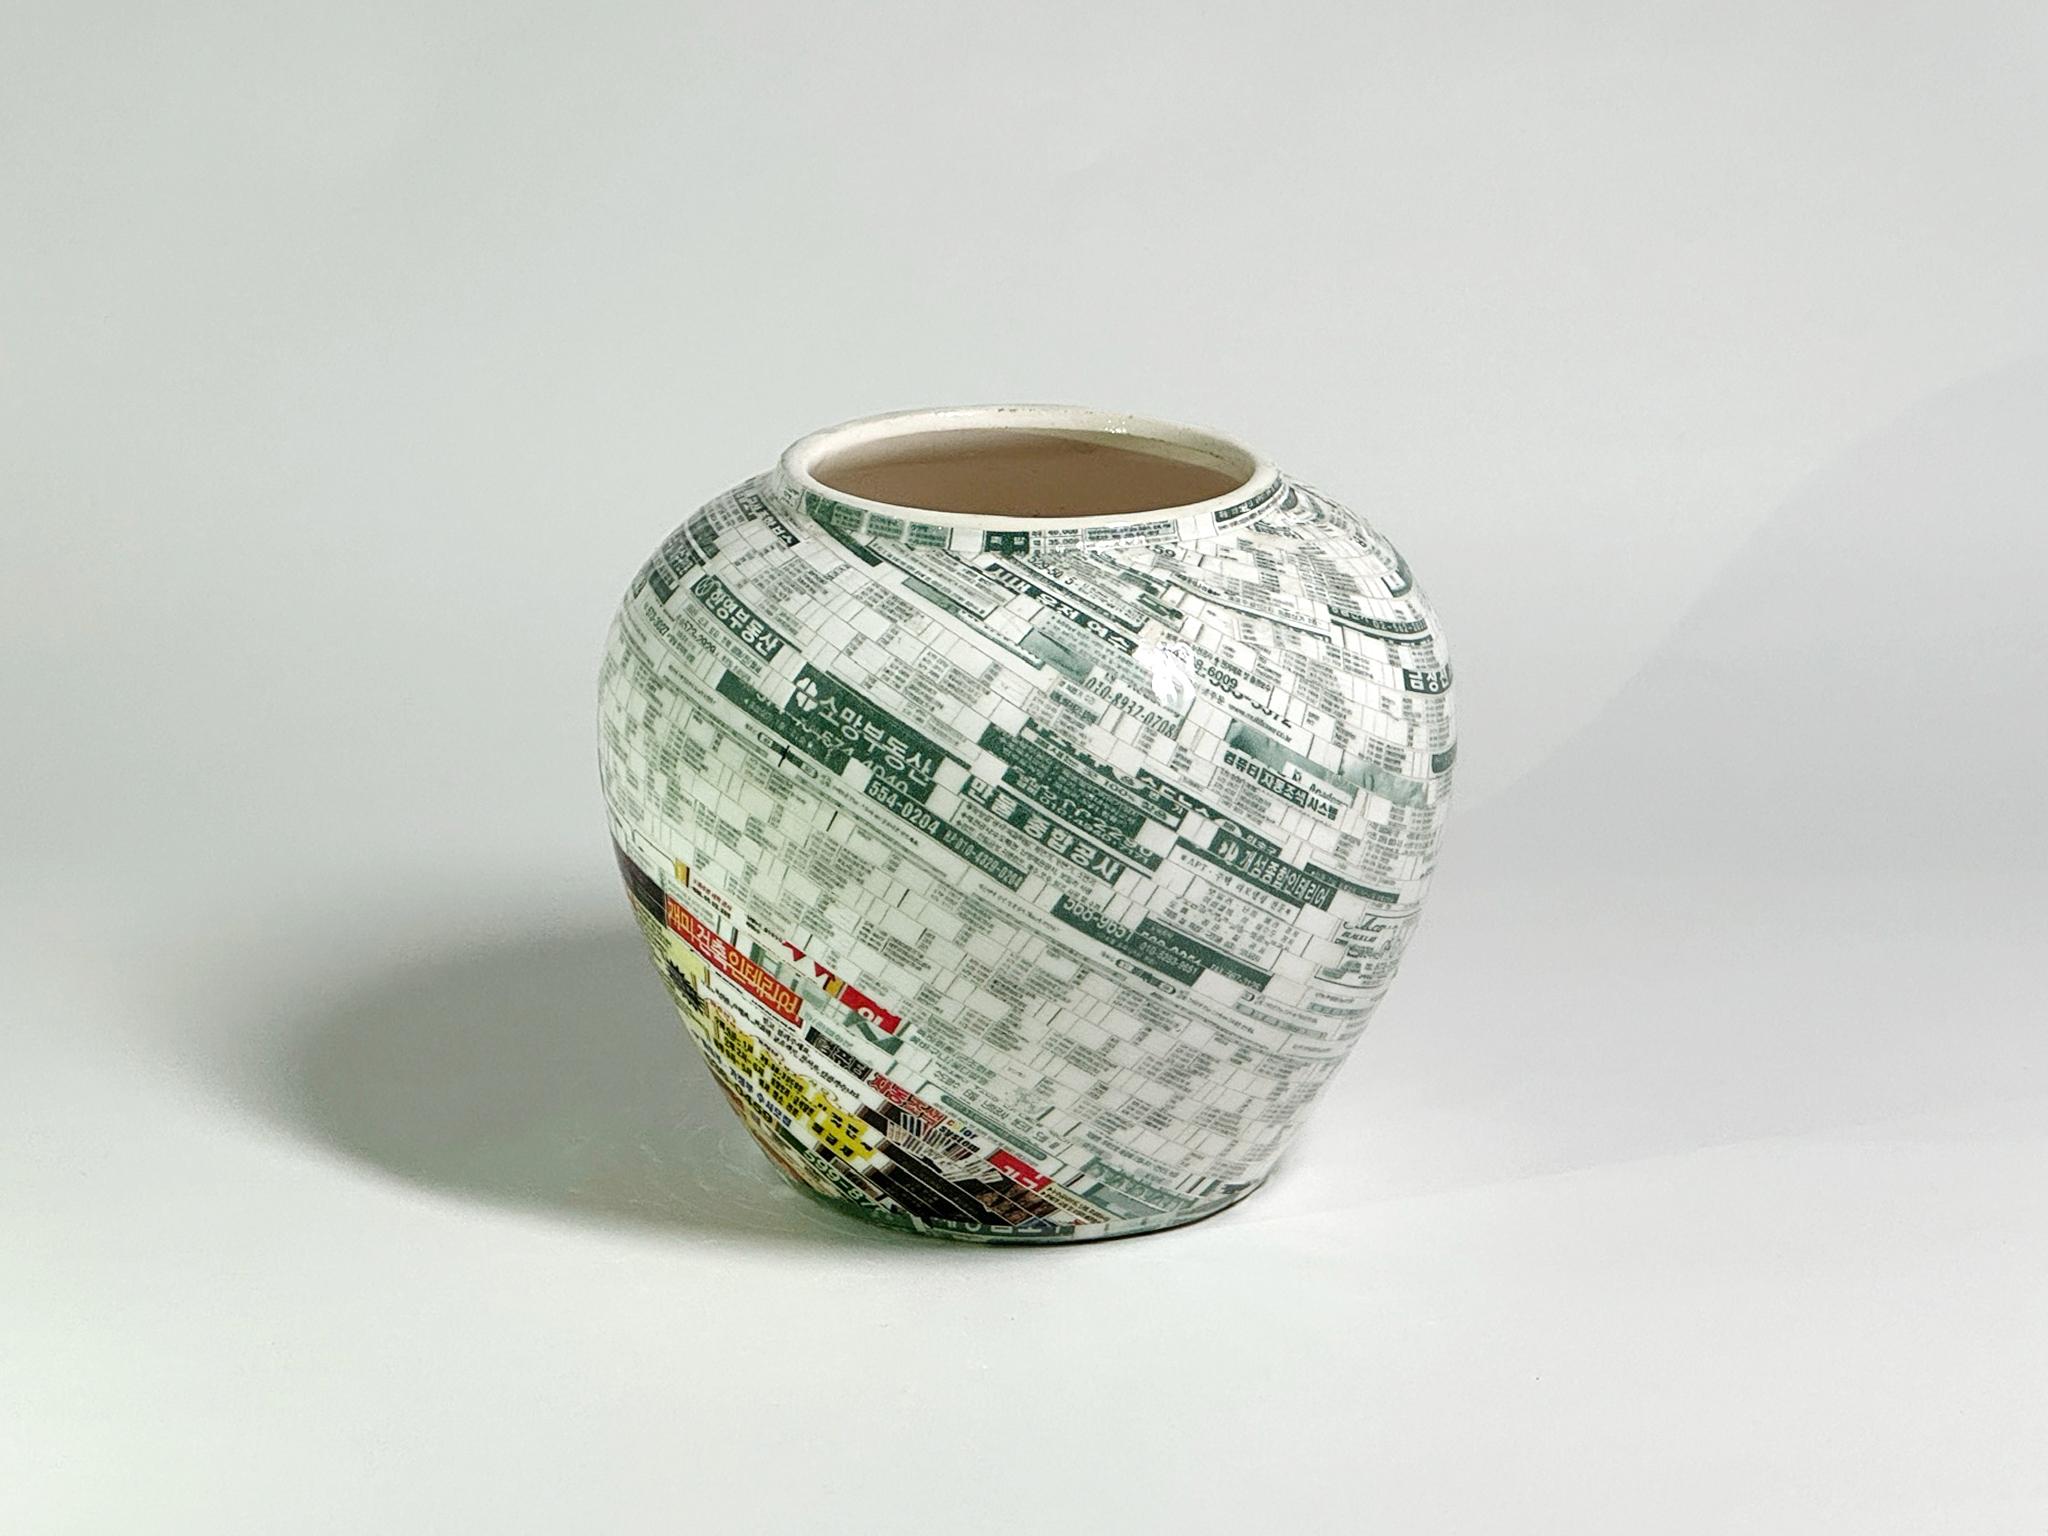 Jjirasi-Vase #05, 2021 von Yongwon Noh
Aus der Serie Jjirasi 
Keramik, PVC-Aufkleber und Harz
Größe: 3.9 Zoll. H x 4.7 in. W x 4.7 in. D
Gewicht: 3kg Unverpackt
Einzigartiges Stück
Signatur auf dem Boden der Vase

Jjirasi Vase erforscht die